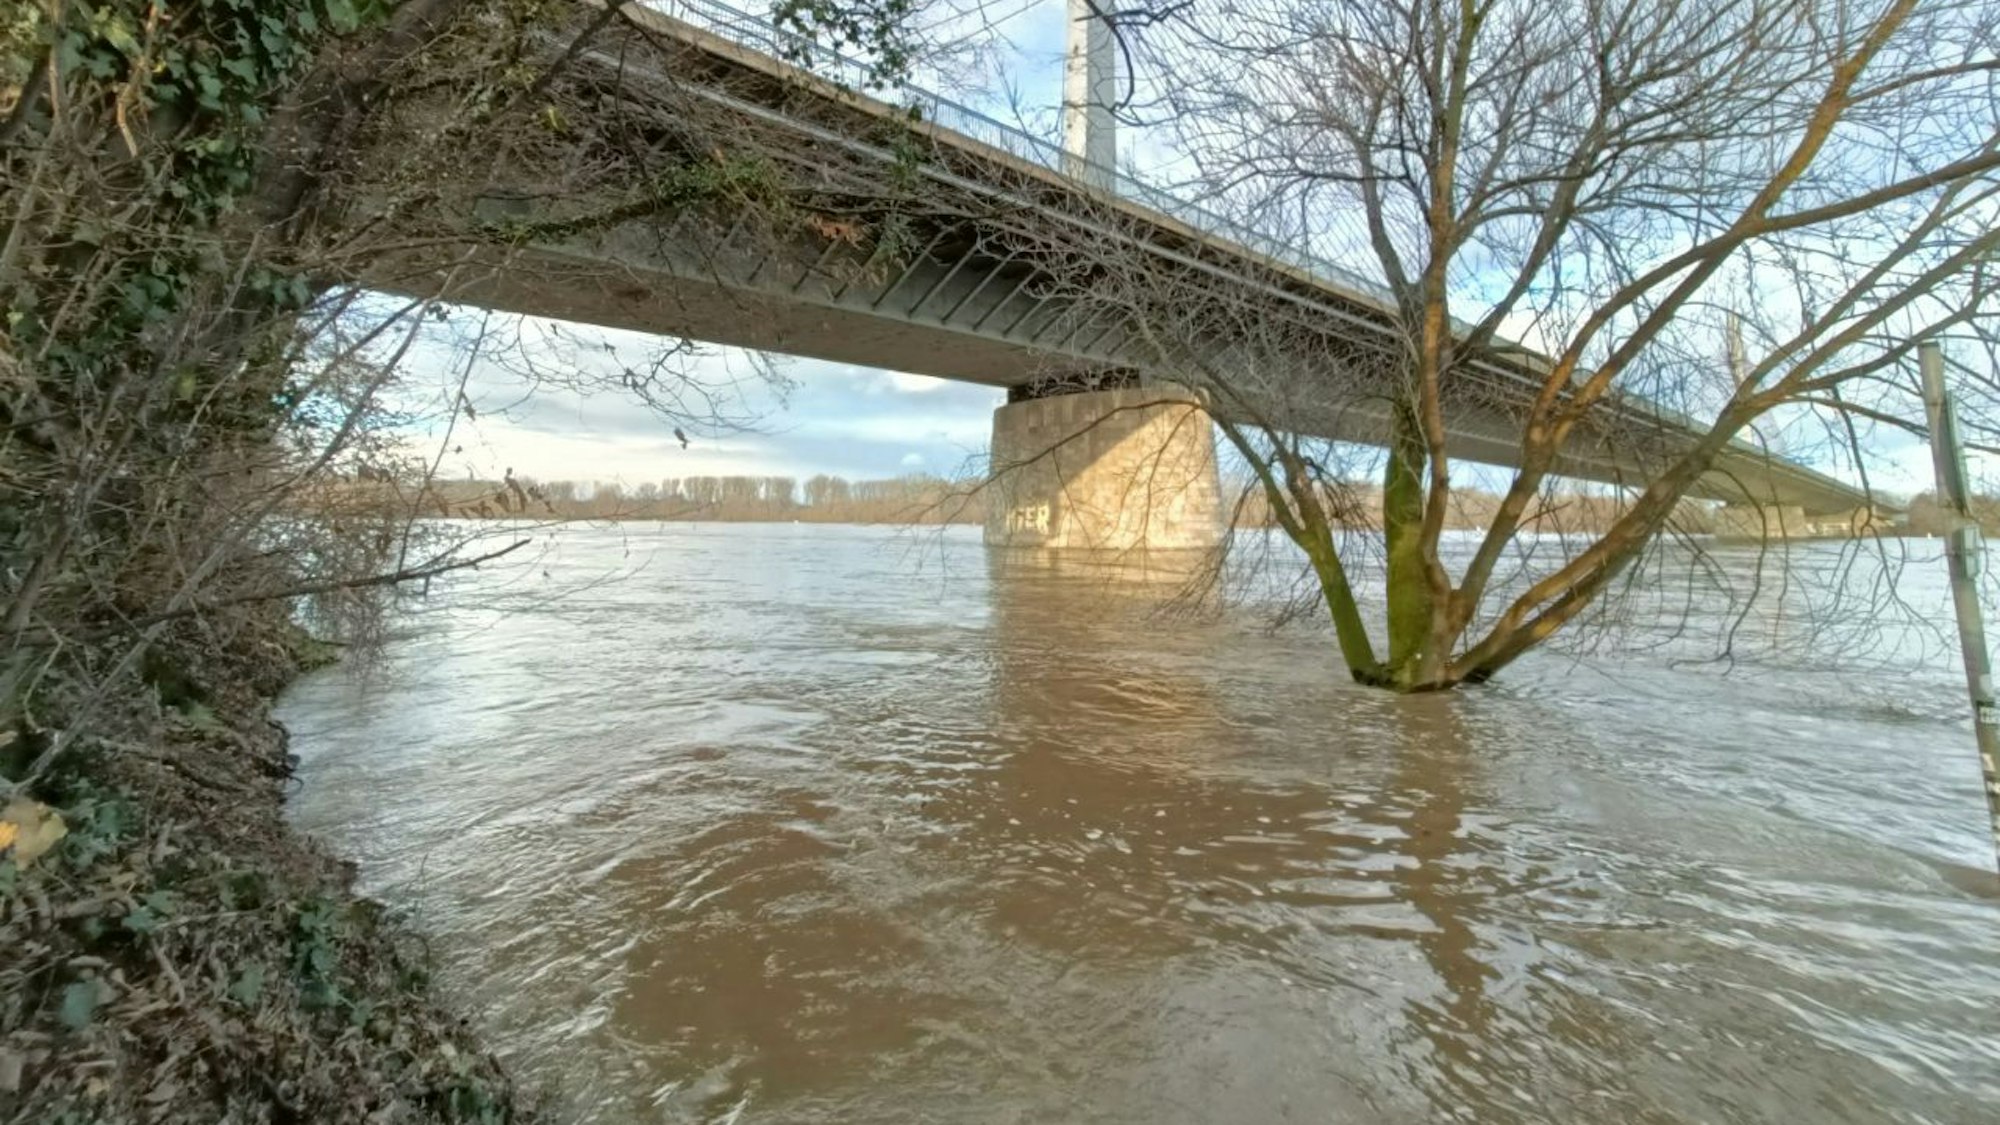 Im Bonner Norden ist am Leinpfad das Rheinufer komplett überflutet. Dass Teile des Geh- und Radwegs eingebrochen sein sollen, ist unter den Wassermassen derzeit nicht sichtbar.